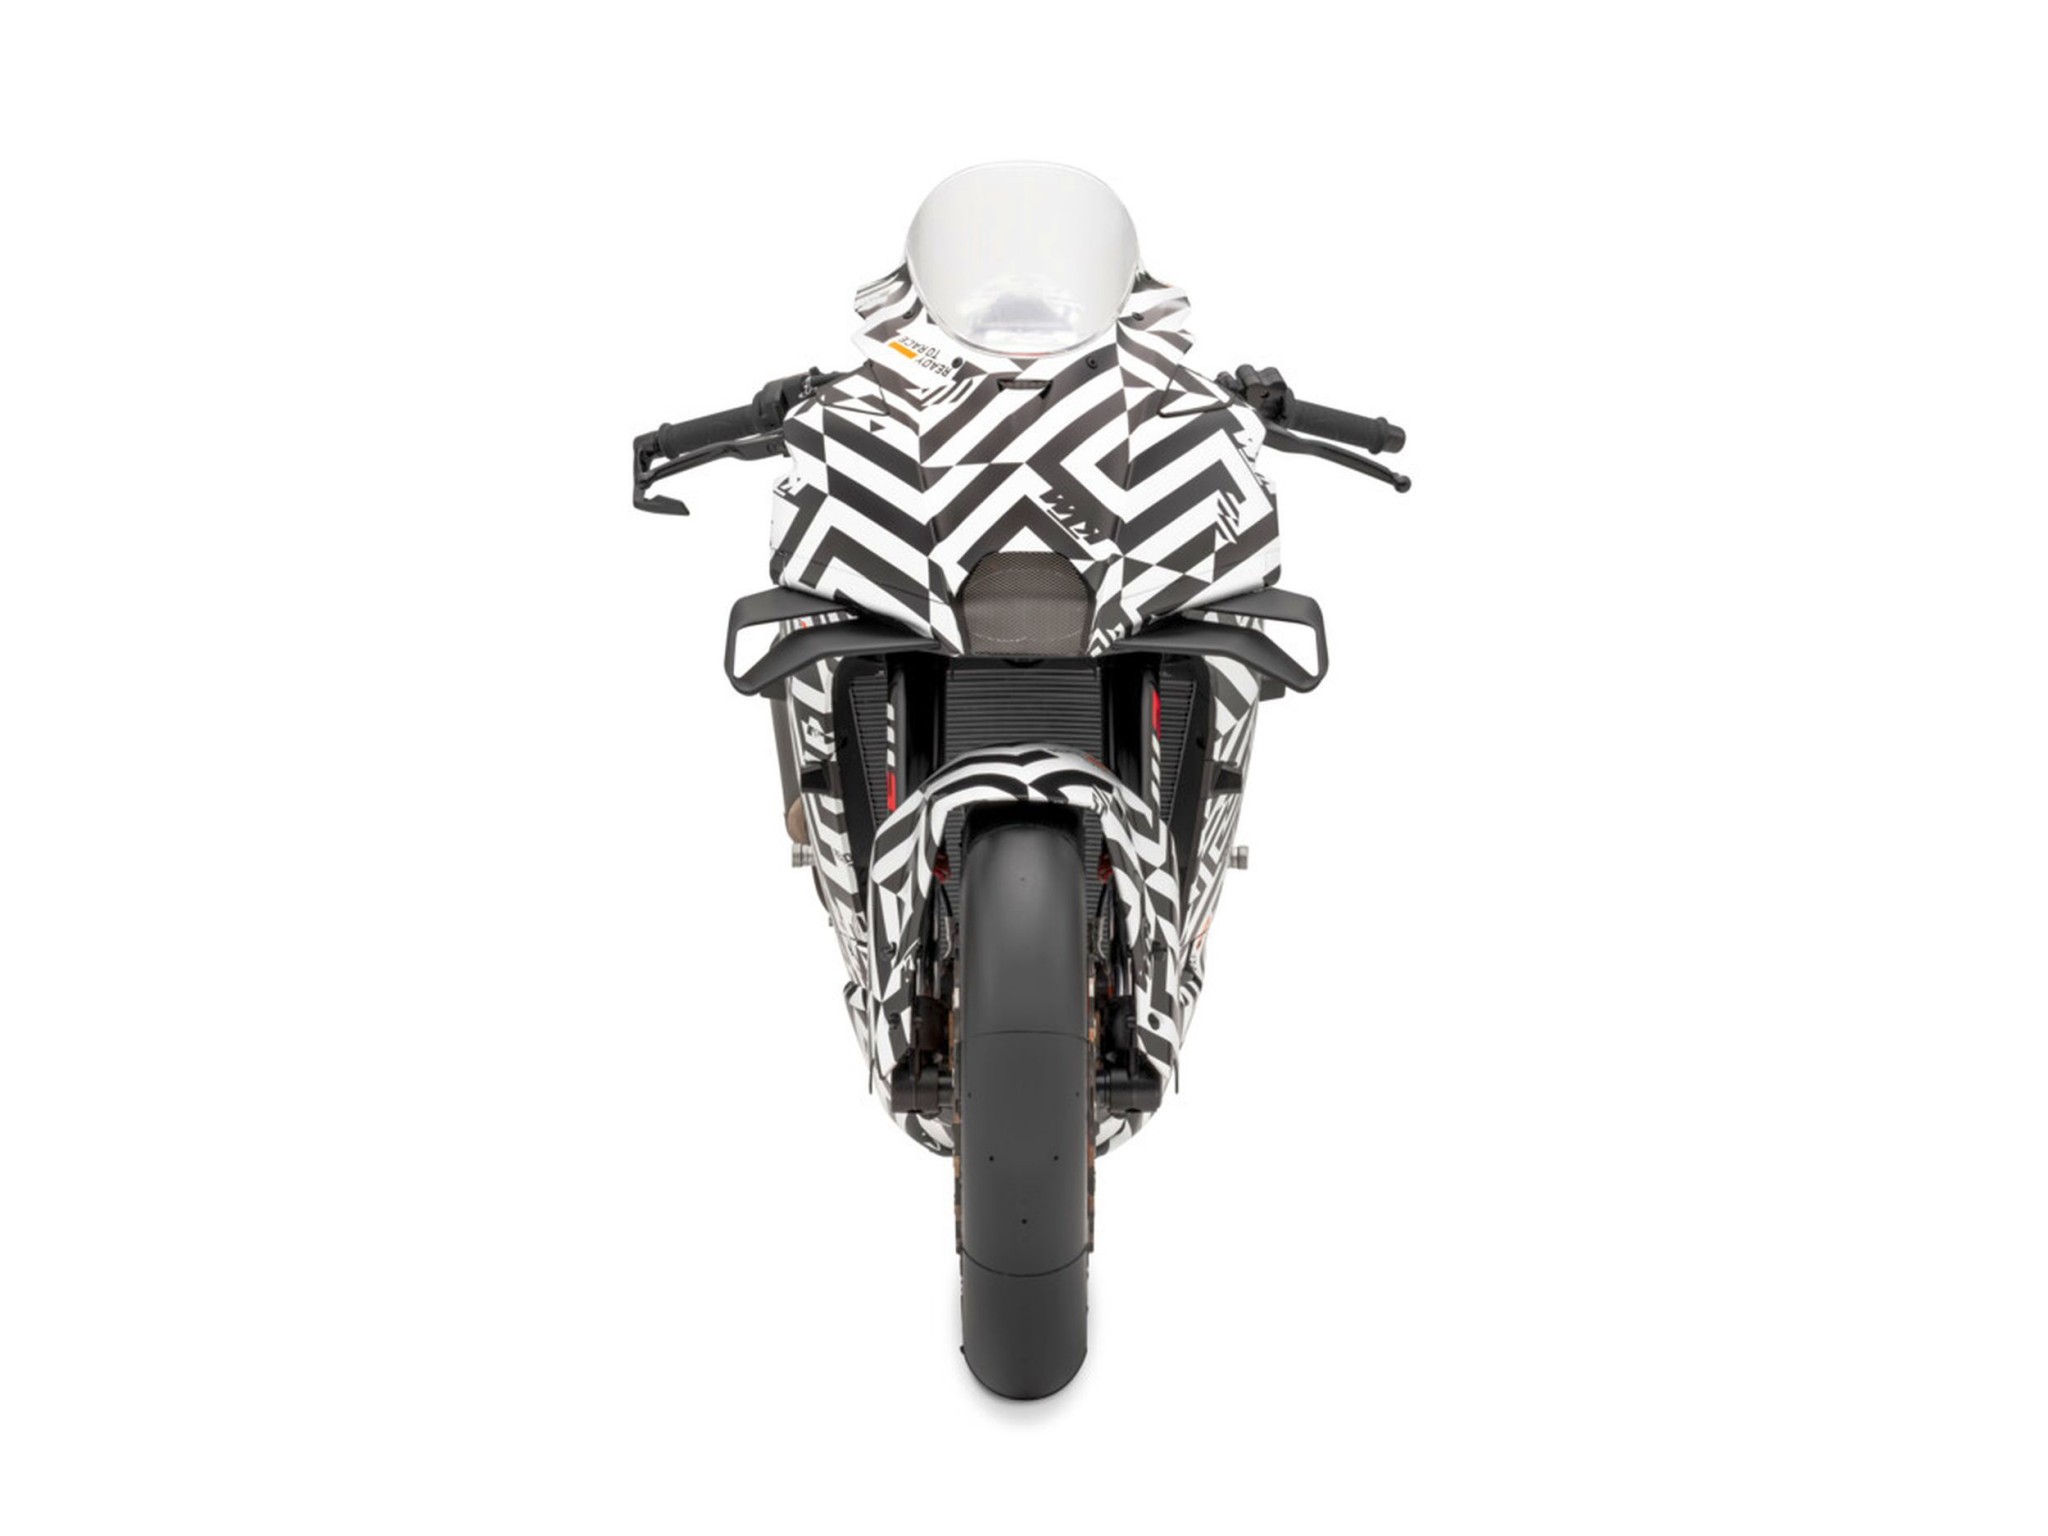 KTM 990 RC R - končno čistokrvni športni motocikel za cesto! - Slika 52